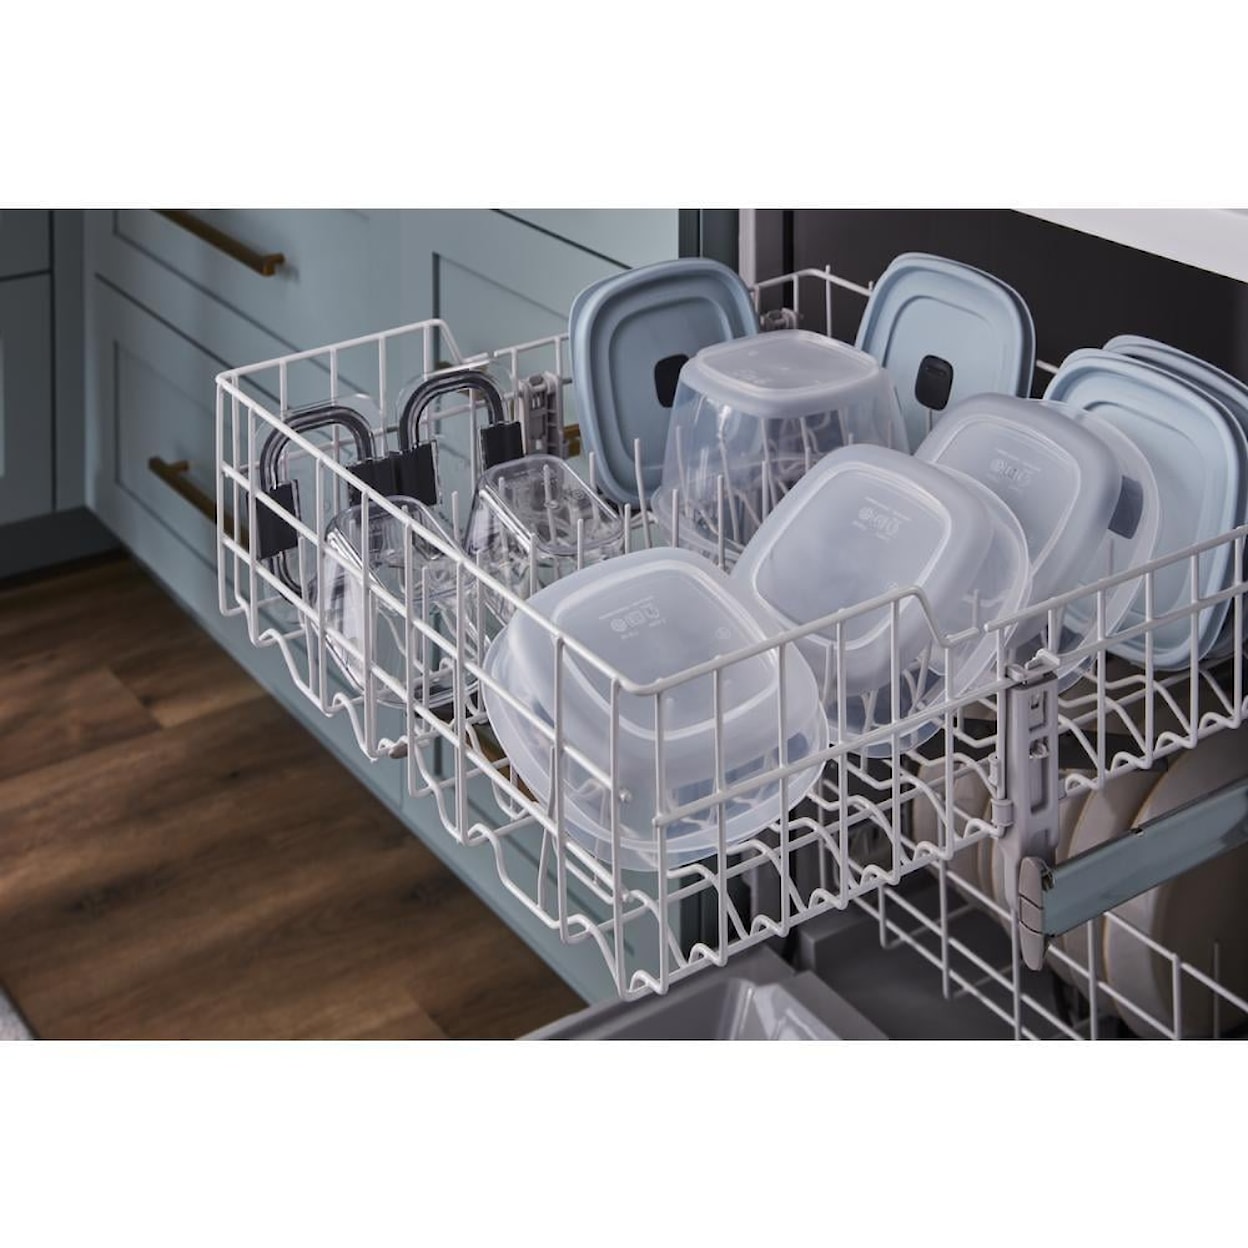 Whirlpool Dishwashers Dishwasher